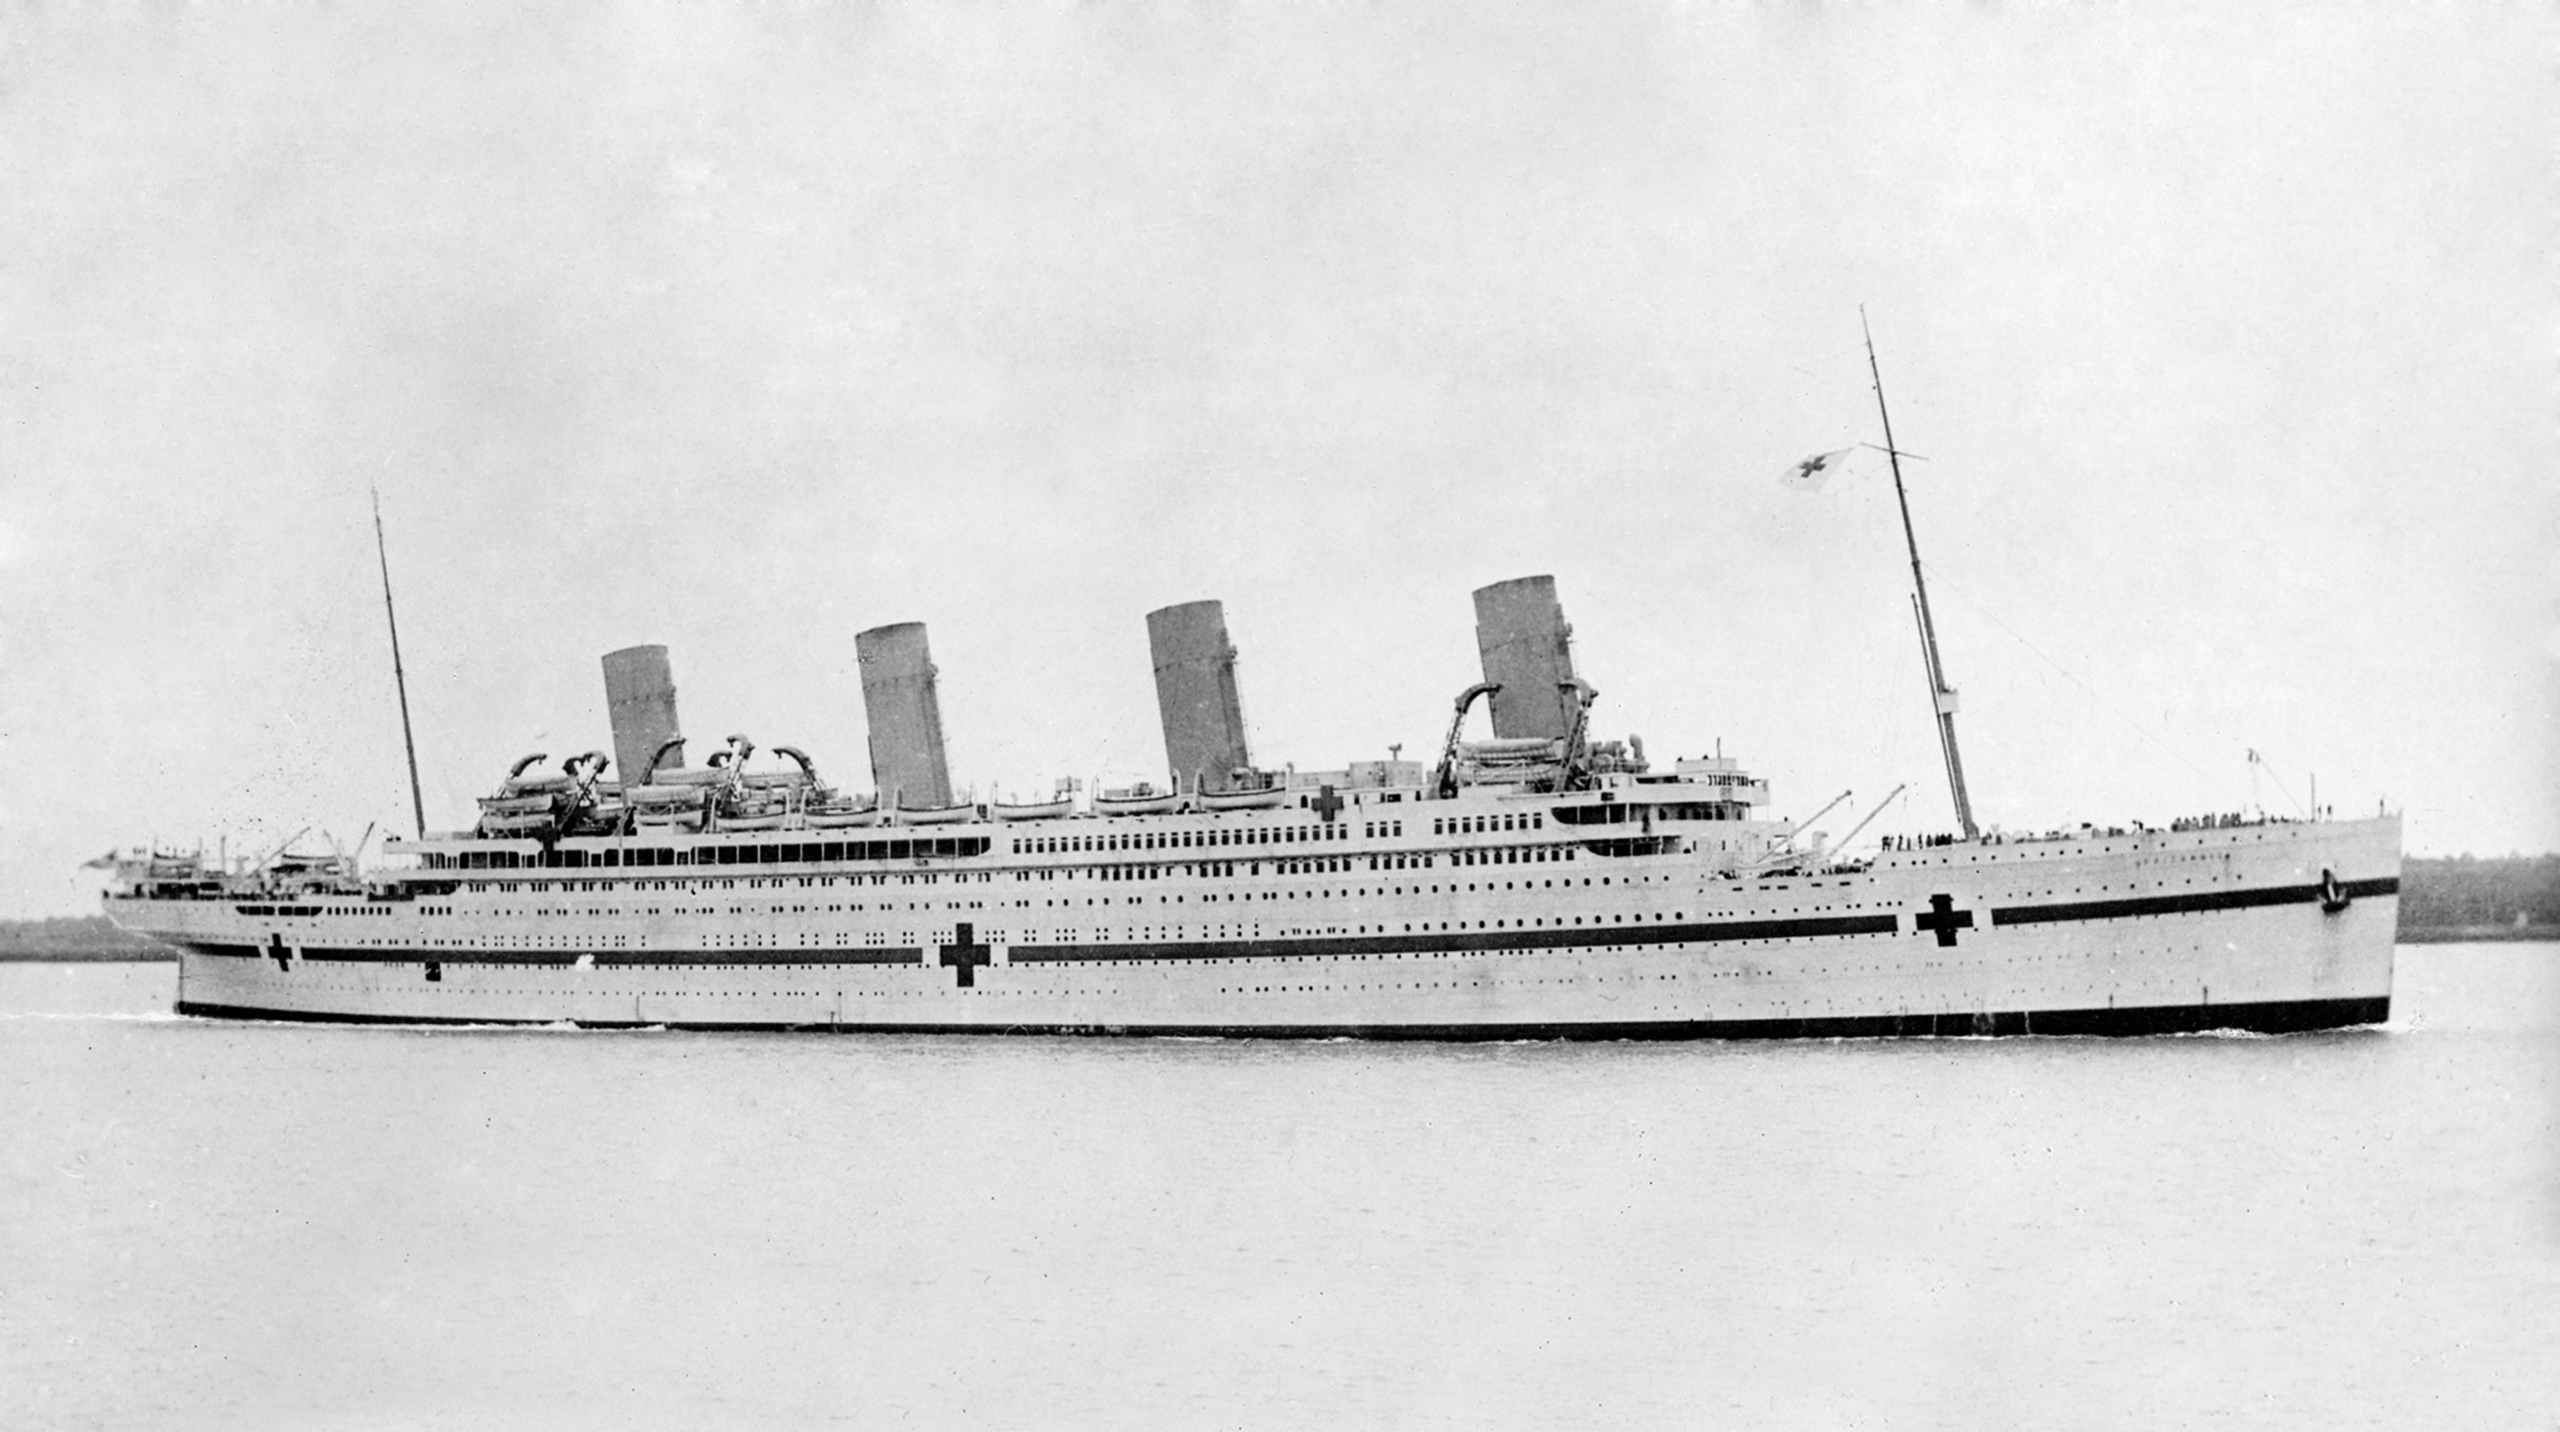 "Miss unsinkable" Violet Jessop – ang naluwas sa Titanic, Olympic ug Britannic Shipwrecks 2